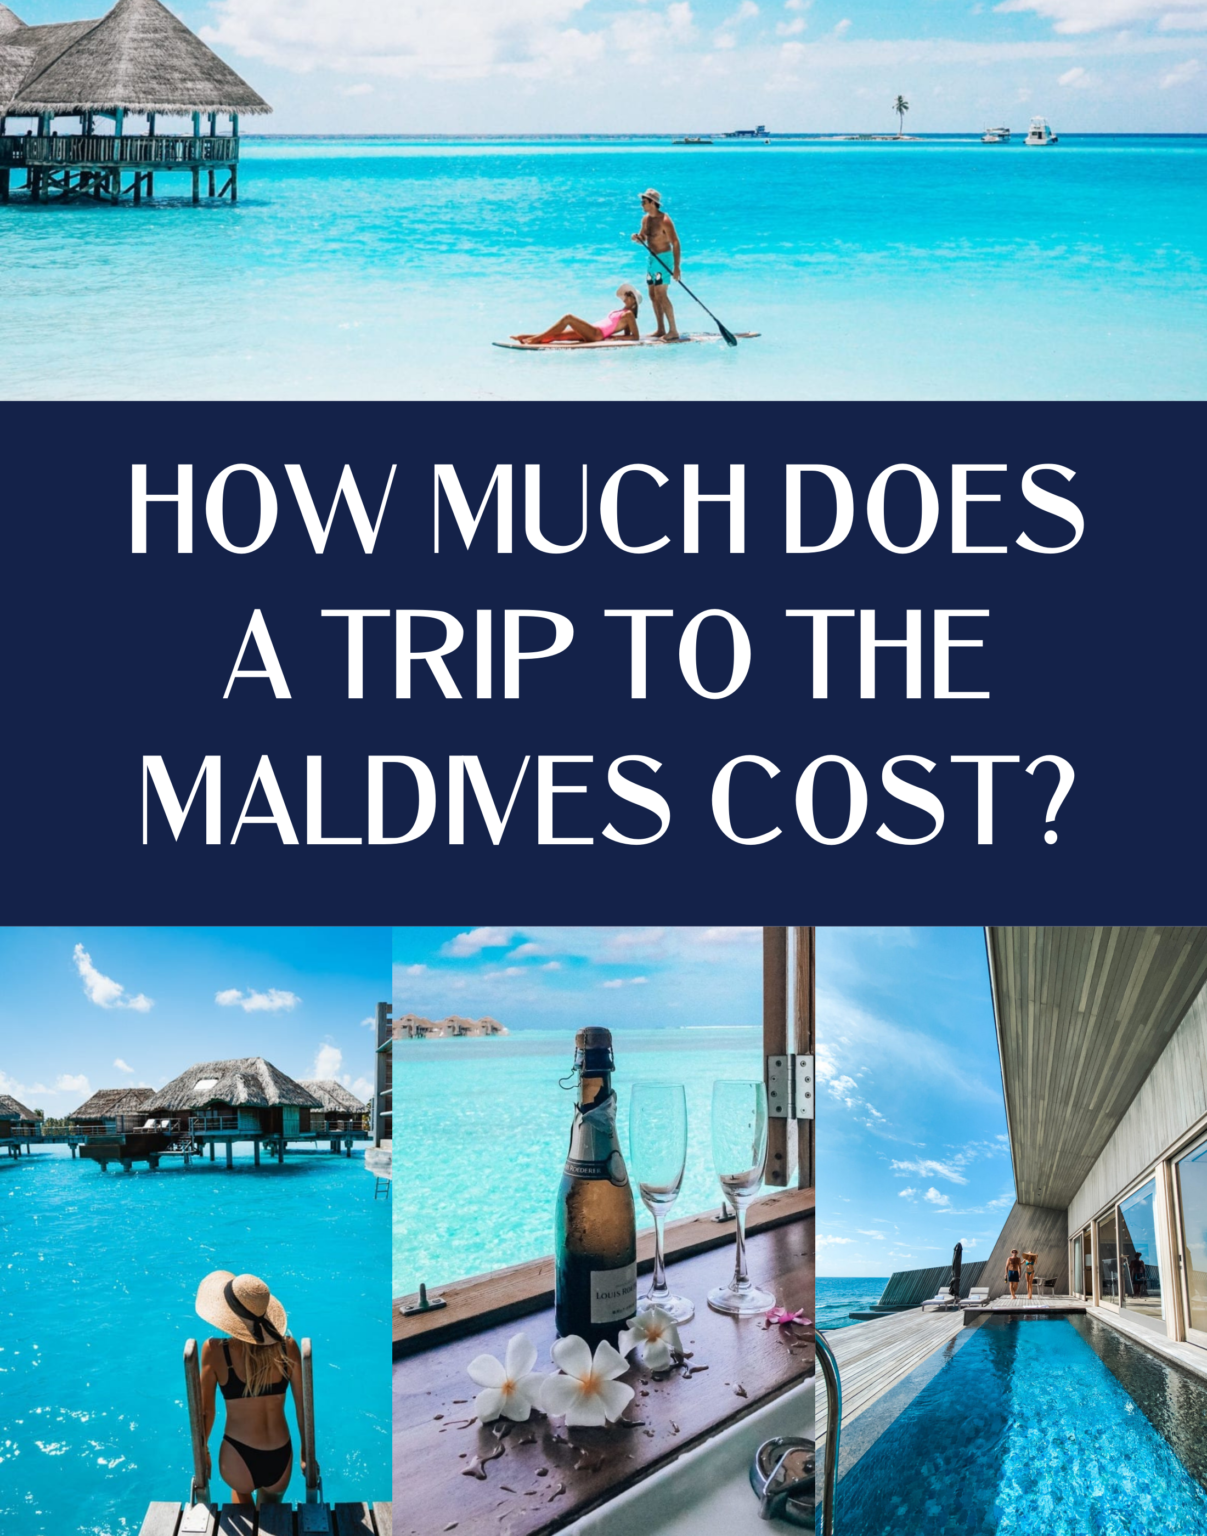 maldives trip cost for single person